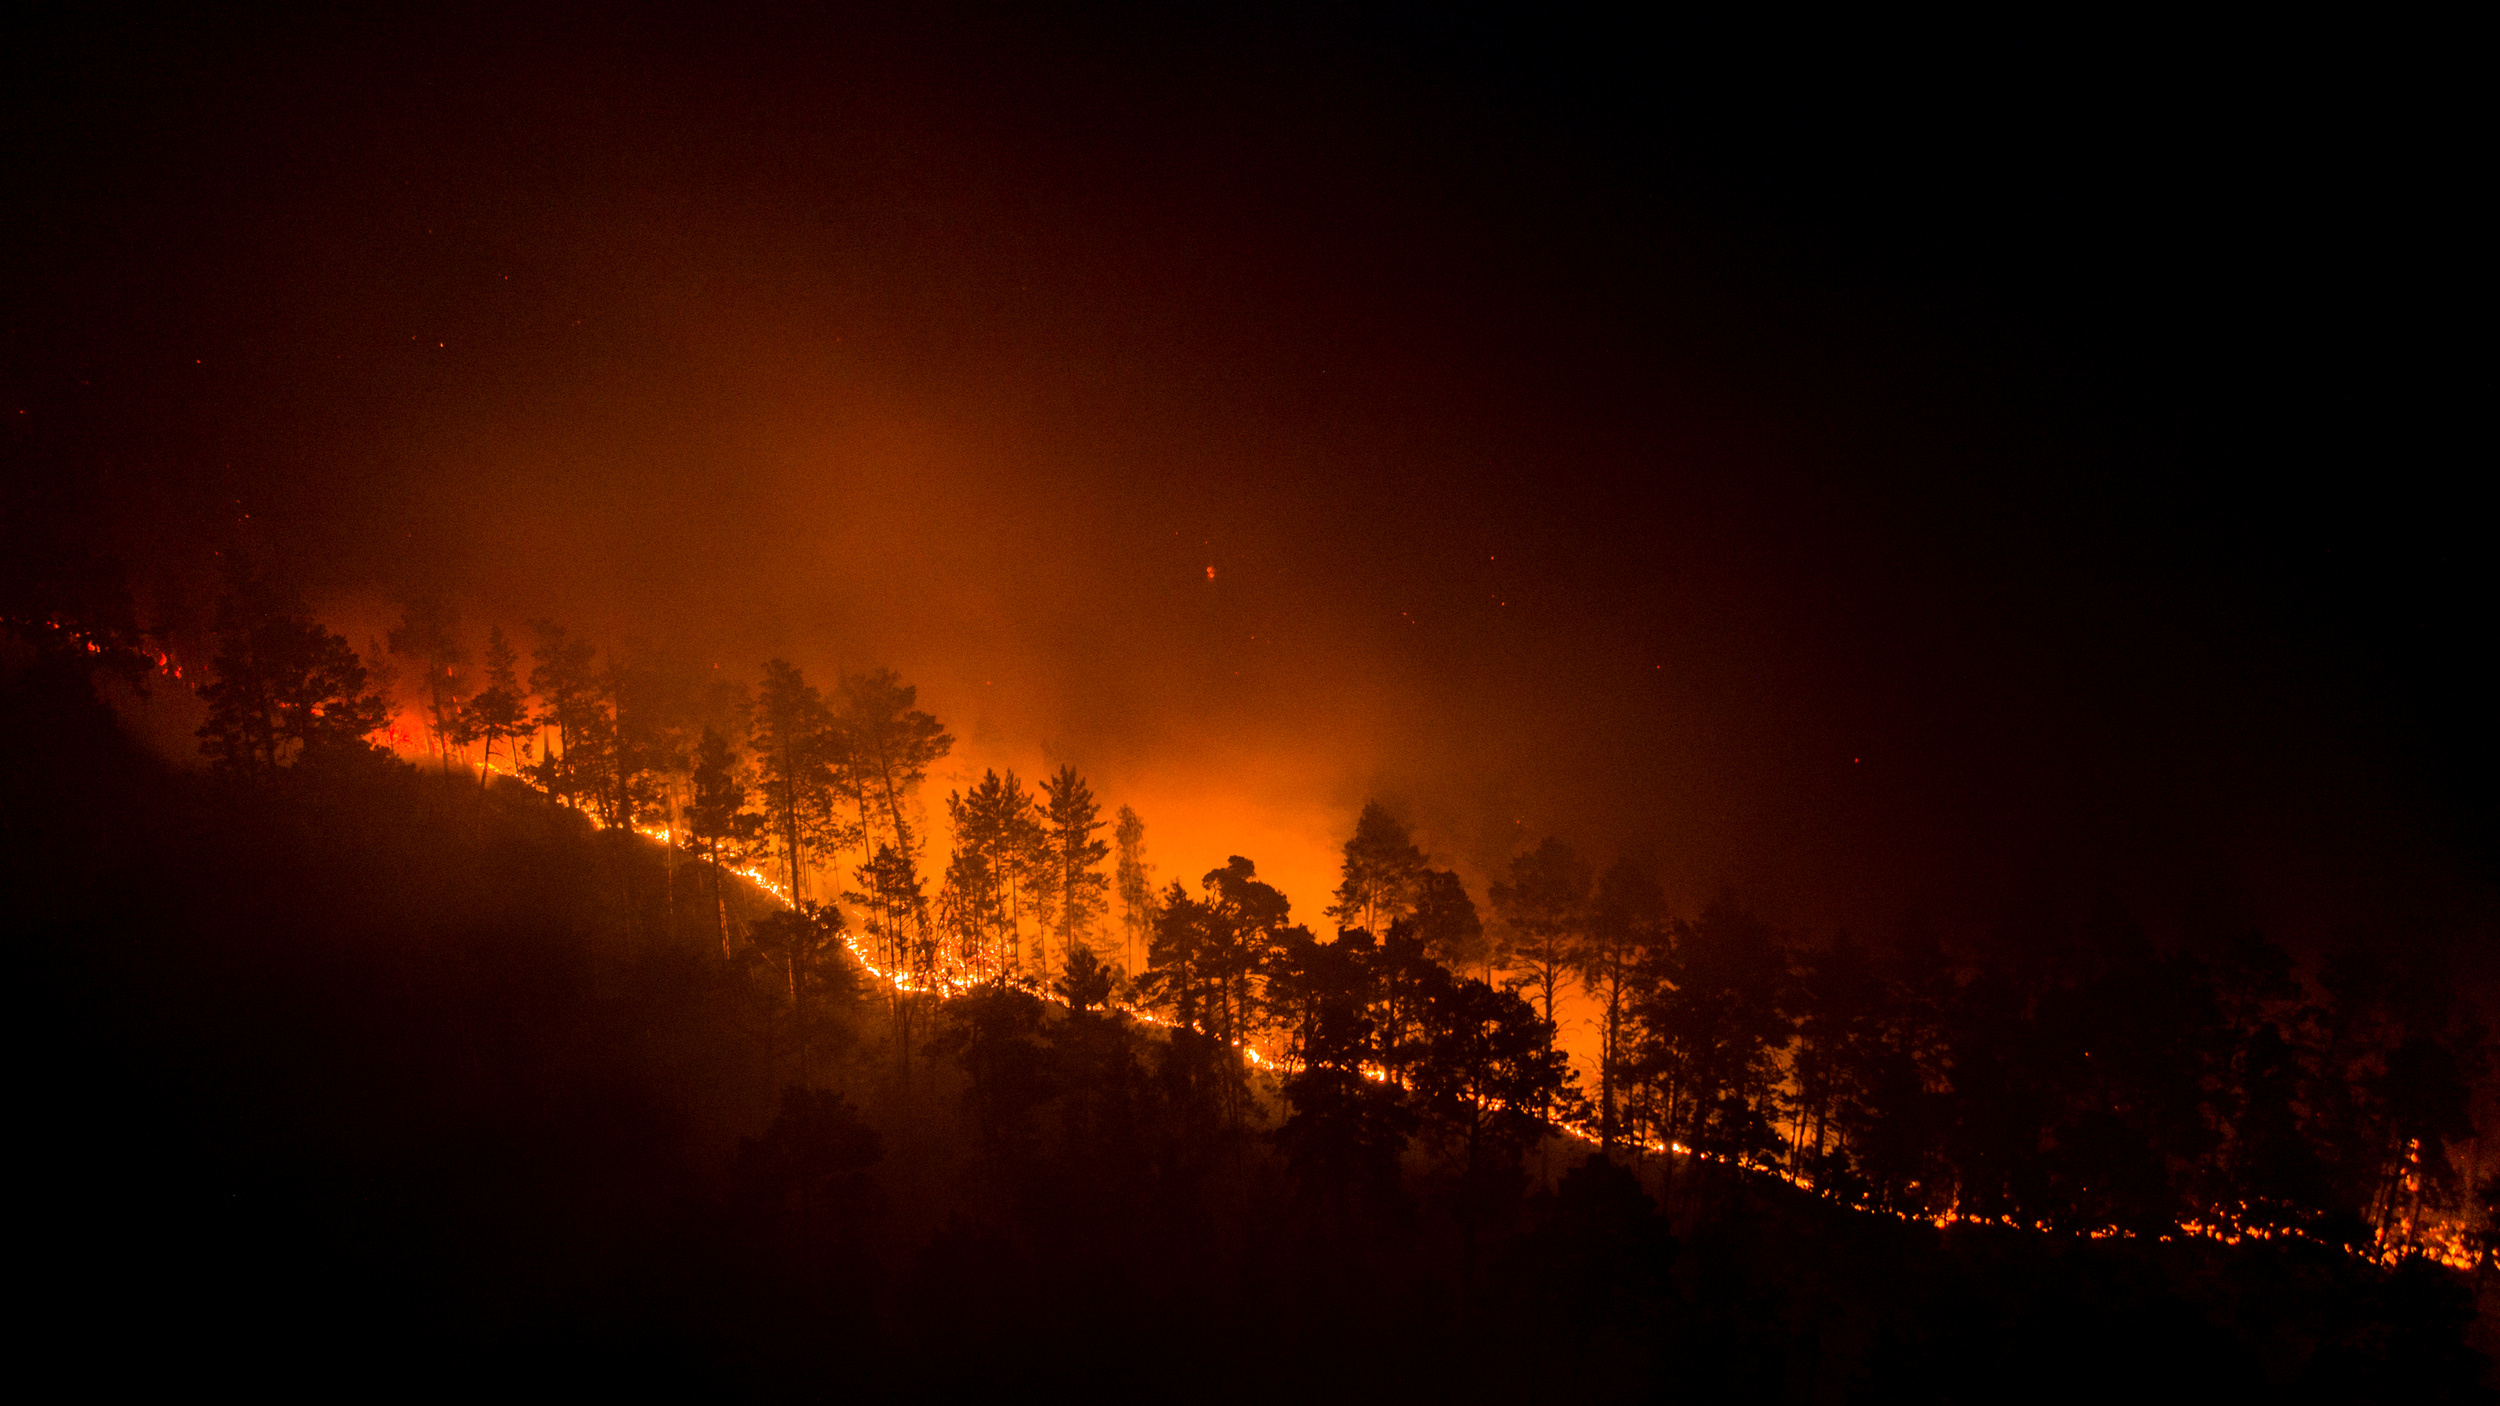 Incendios forestales causados por la ola de calor sin preced - Noticias Viajeras: de Actualidad, Curiosas... - Foro General de Viajes